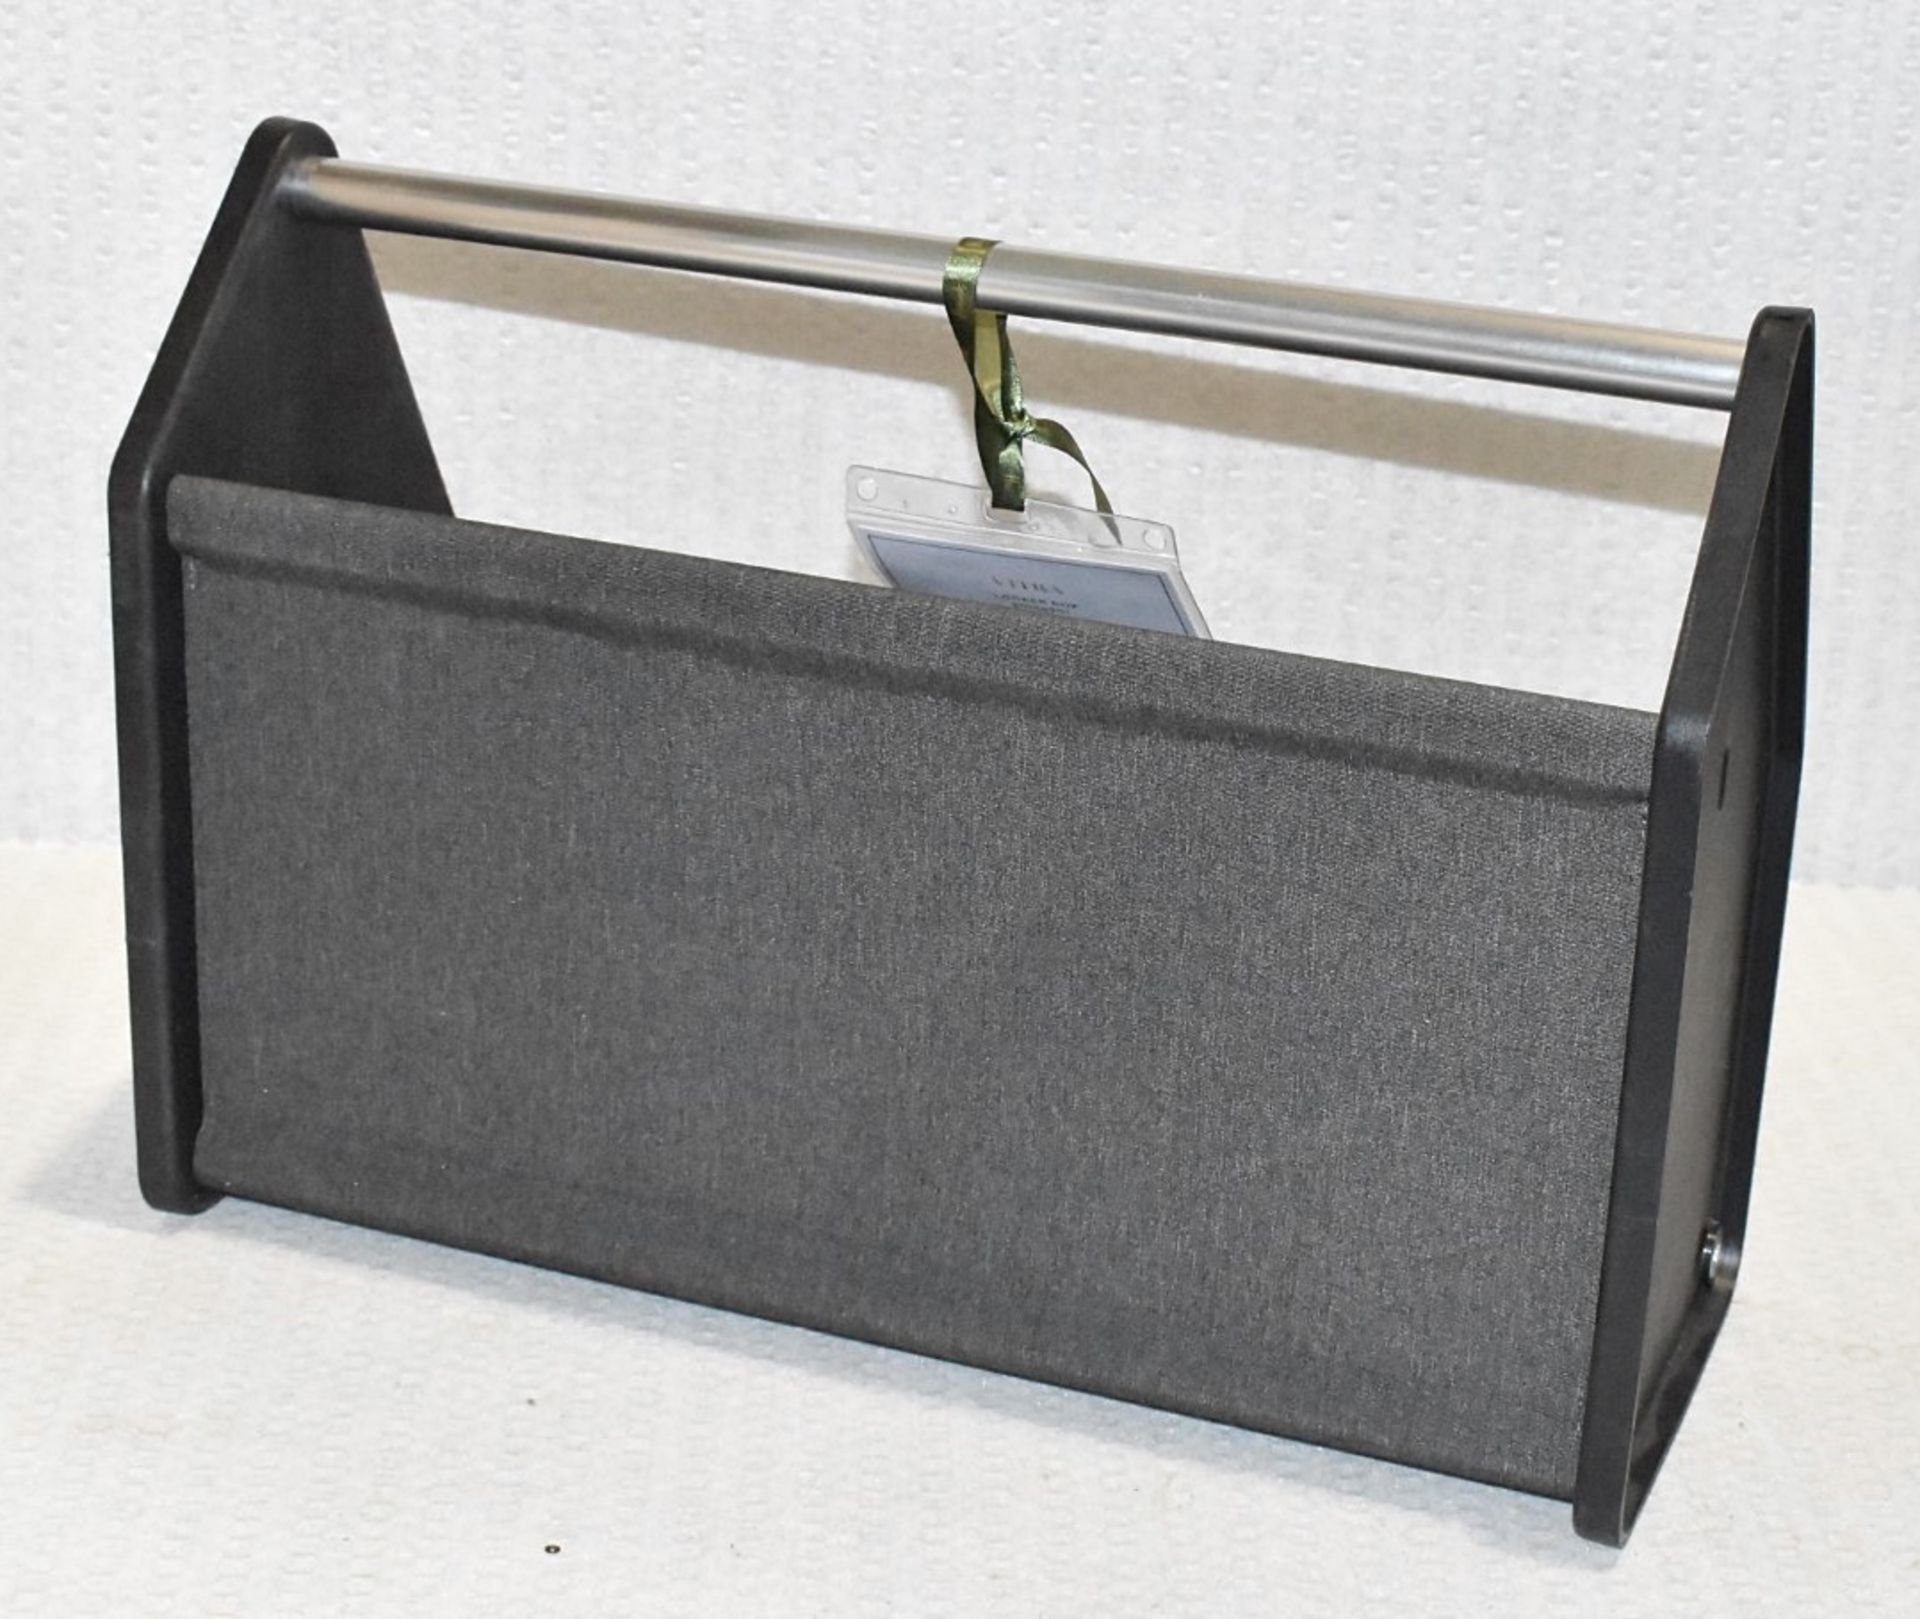 1 x VITRA 'Locker Box' Designer Portable Desk Organiser in Black & Grey - Original Price £185.00 - Image 2 of 6